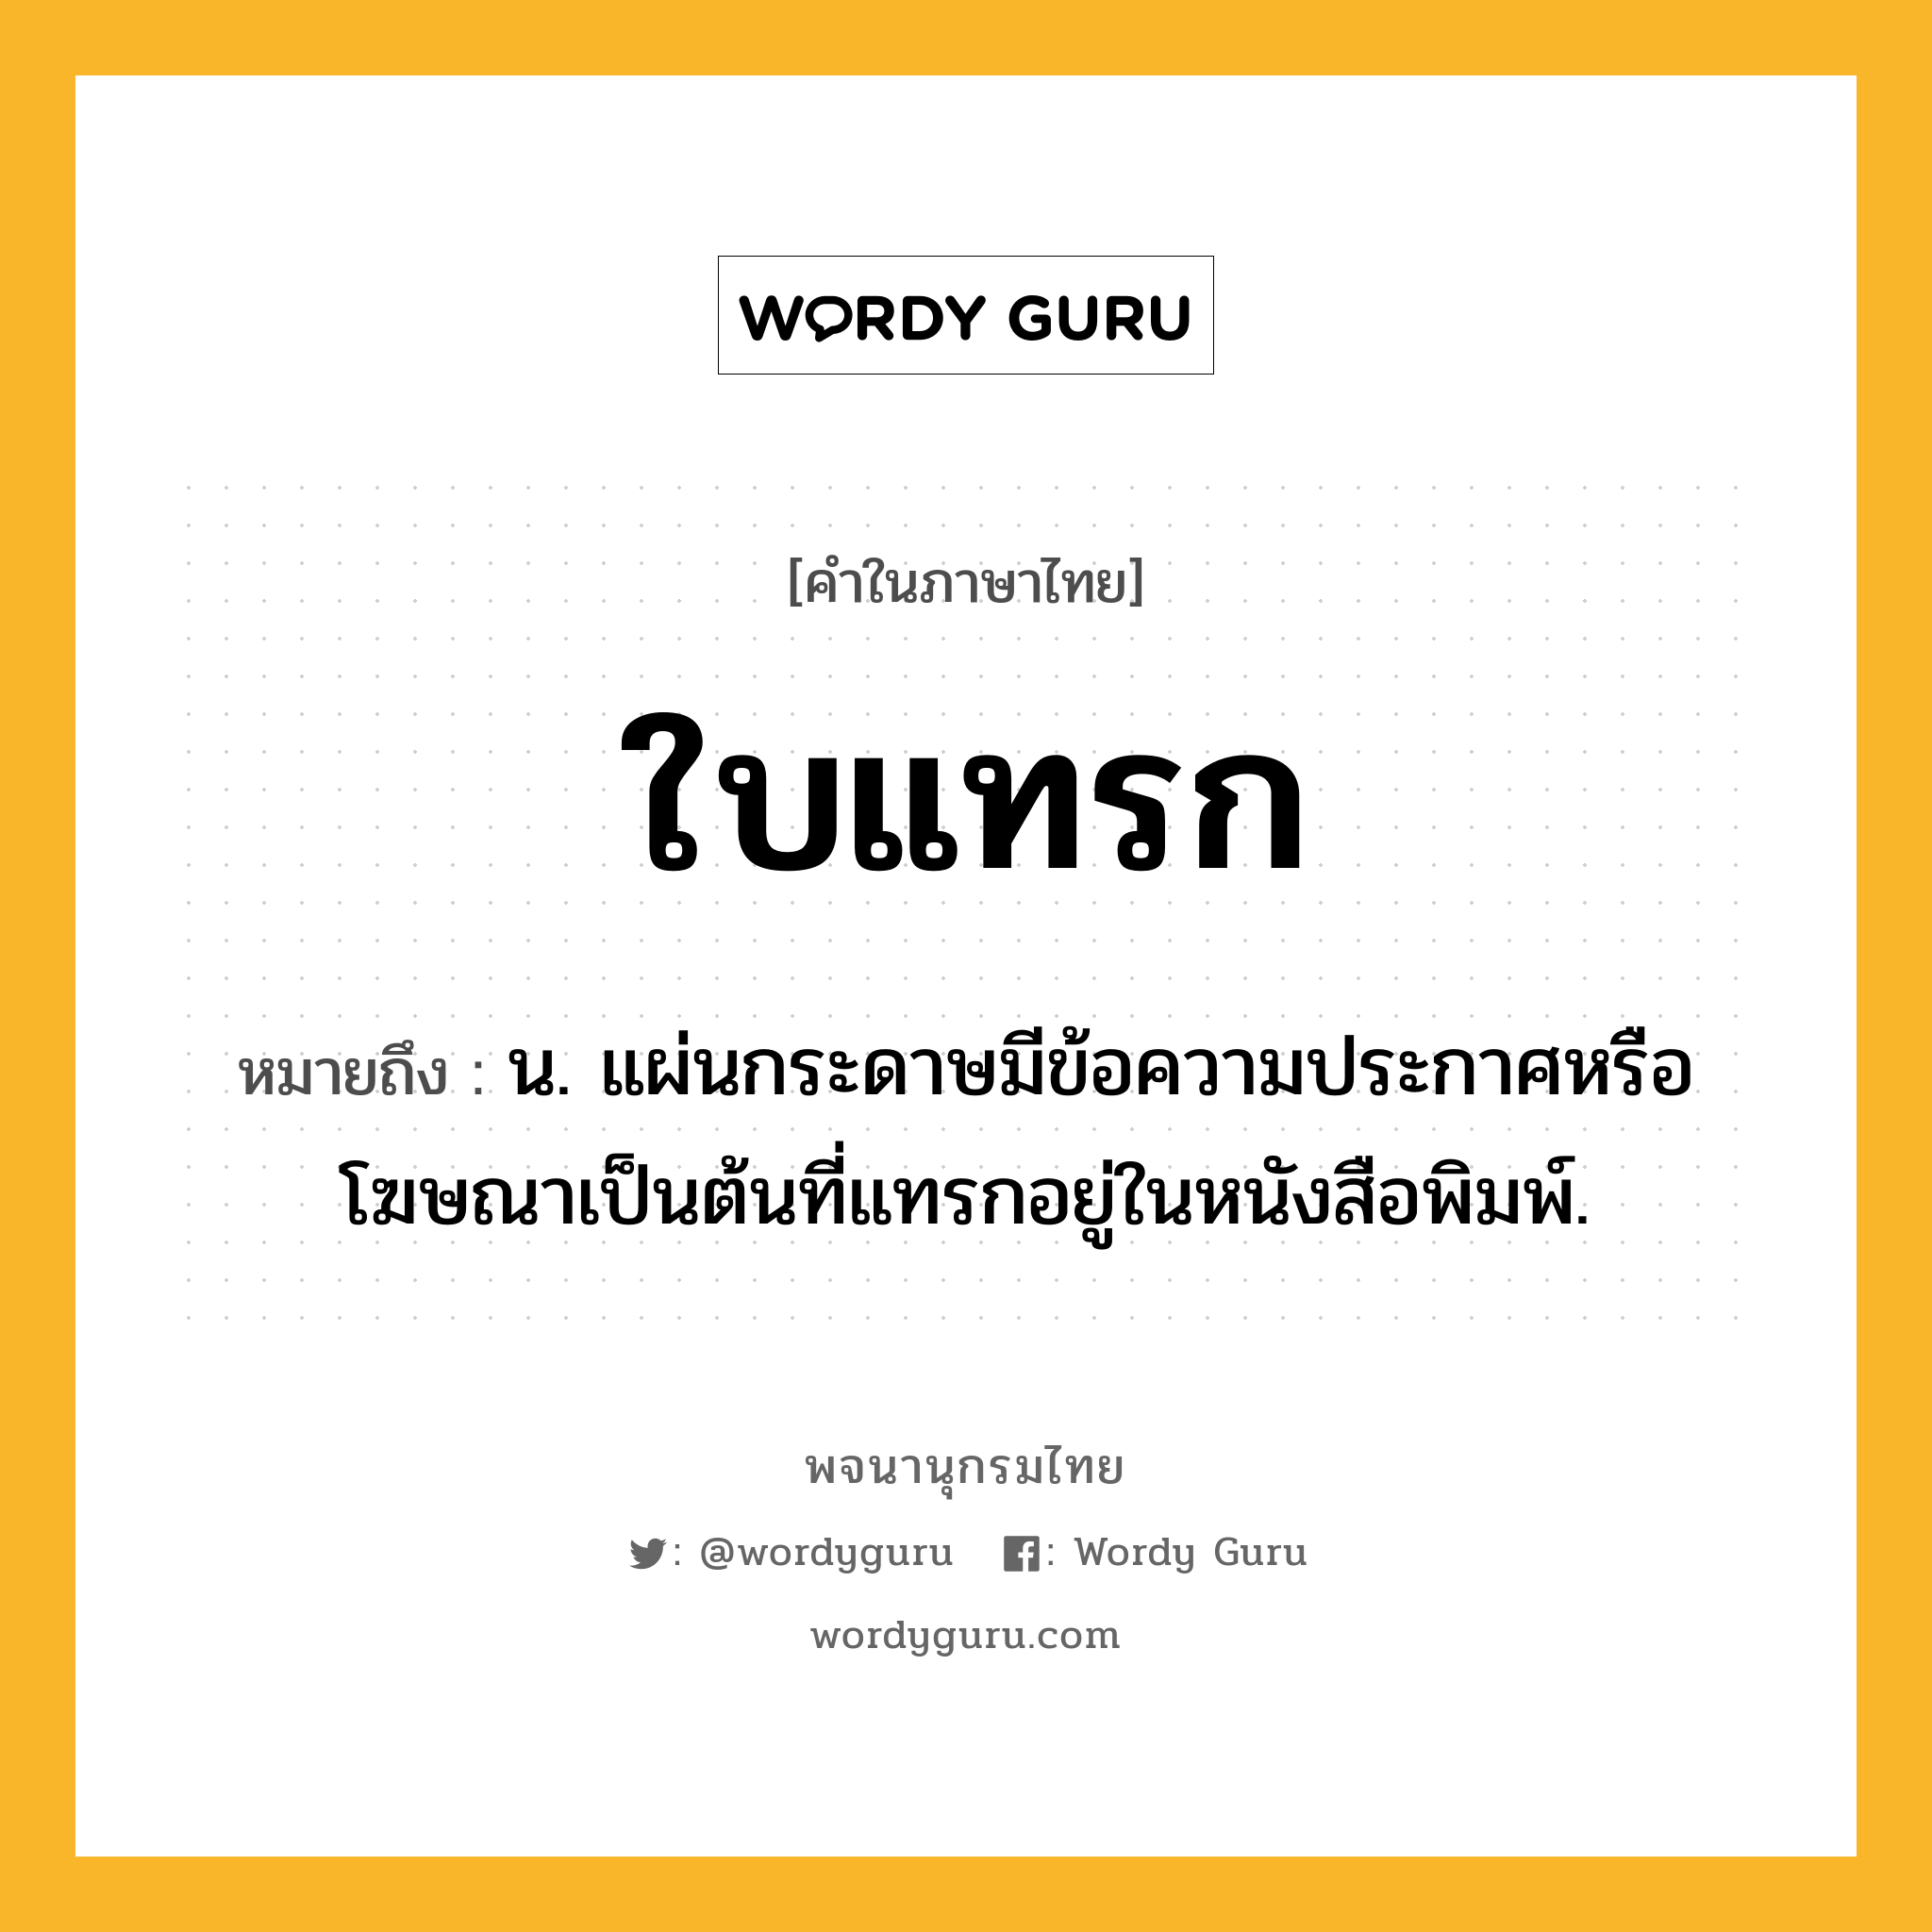 ใบแทรก หมายถึงอะไร?, คำในภาษาไทย ใบแทรก หมายถึง น. แผ่นกระดาษมีข้อความประกาศหรือโฆษณาเป็นต้นที่แทรกอยู่ในหนังสือพิมพ์.